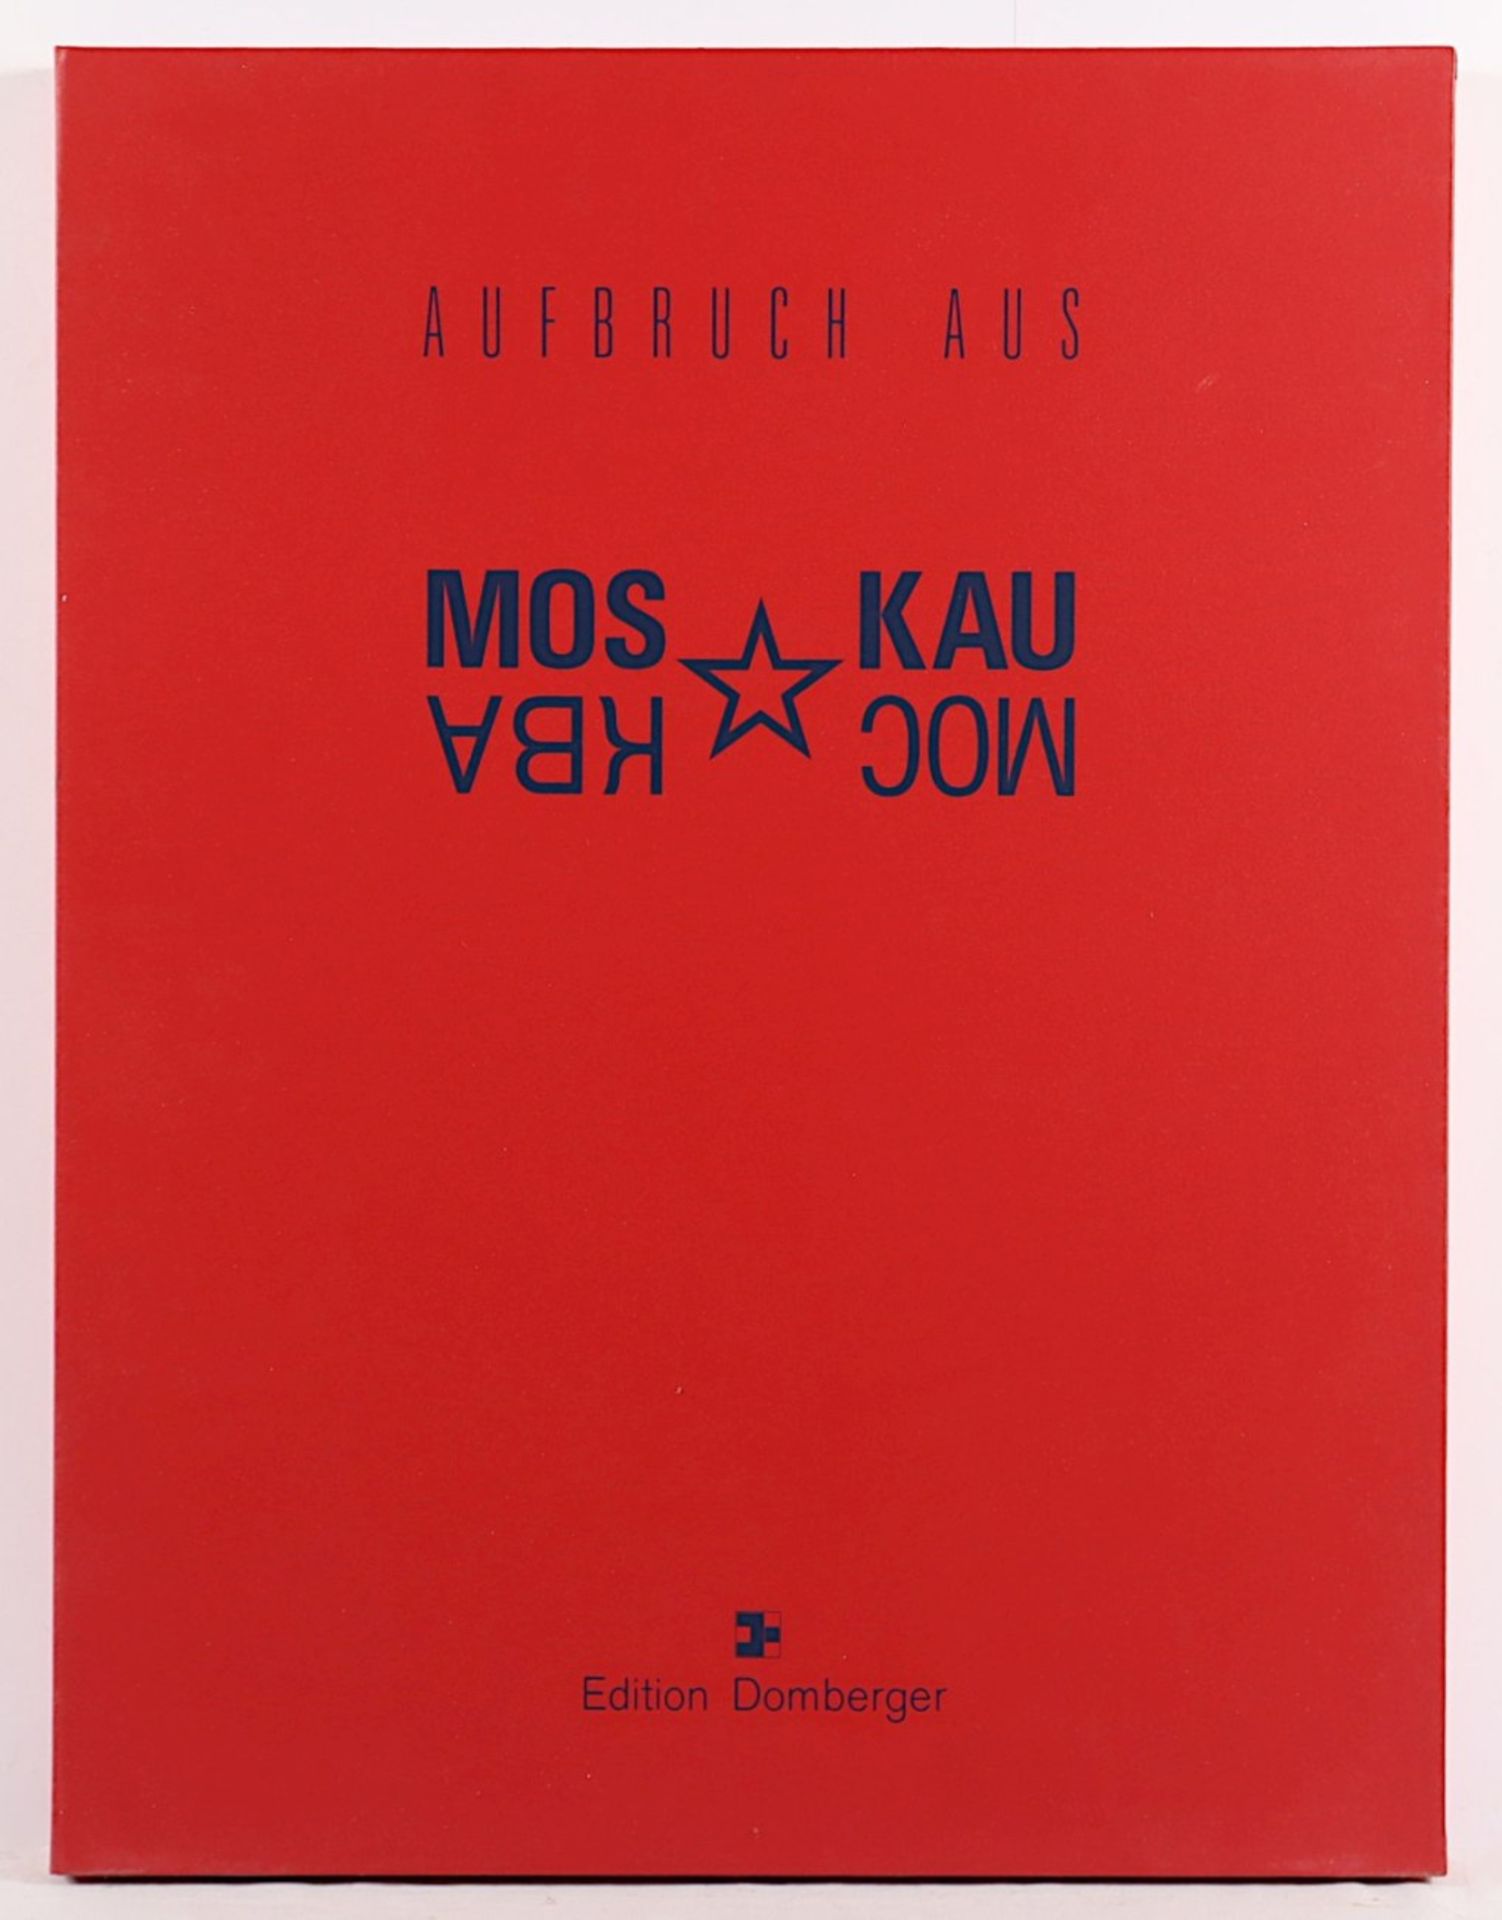 KUNSTMAPPE, "Aufbruch aus Moskau", Edition Domberger, 1990. Portfolio-Kassette 20 Arbeiten - Bild 11 aus 12